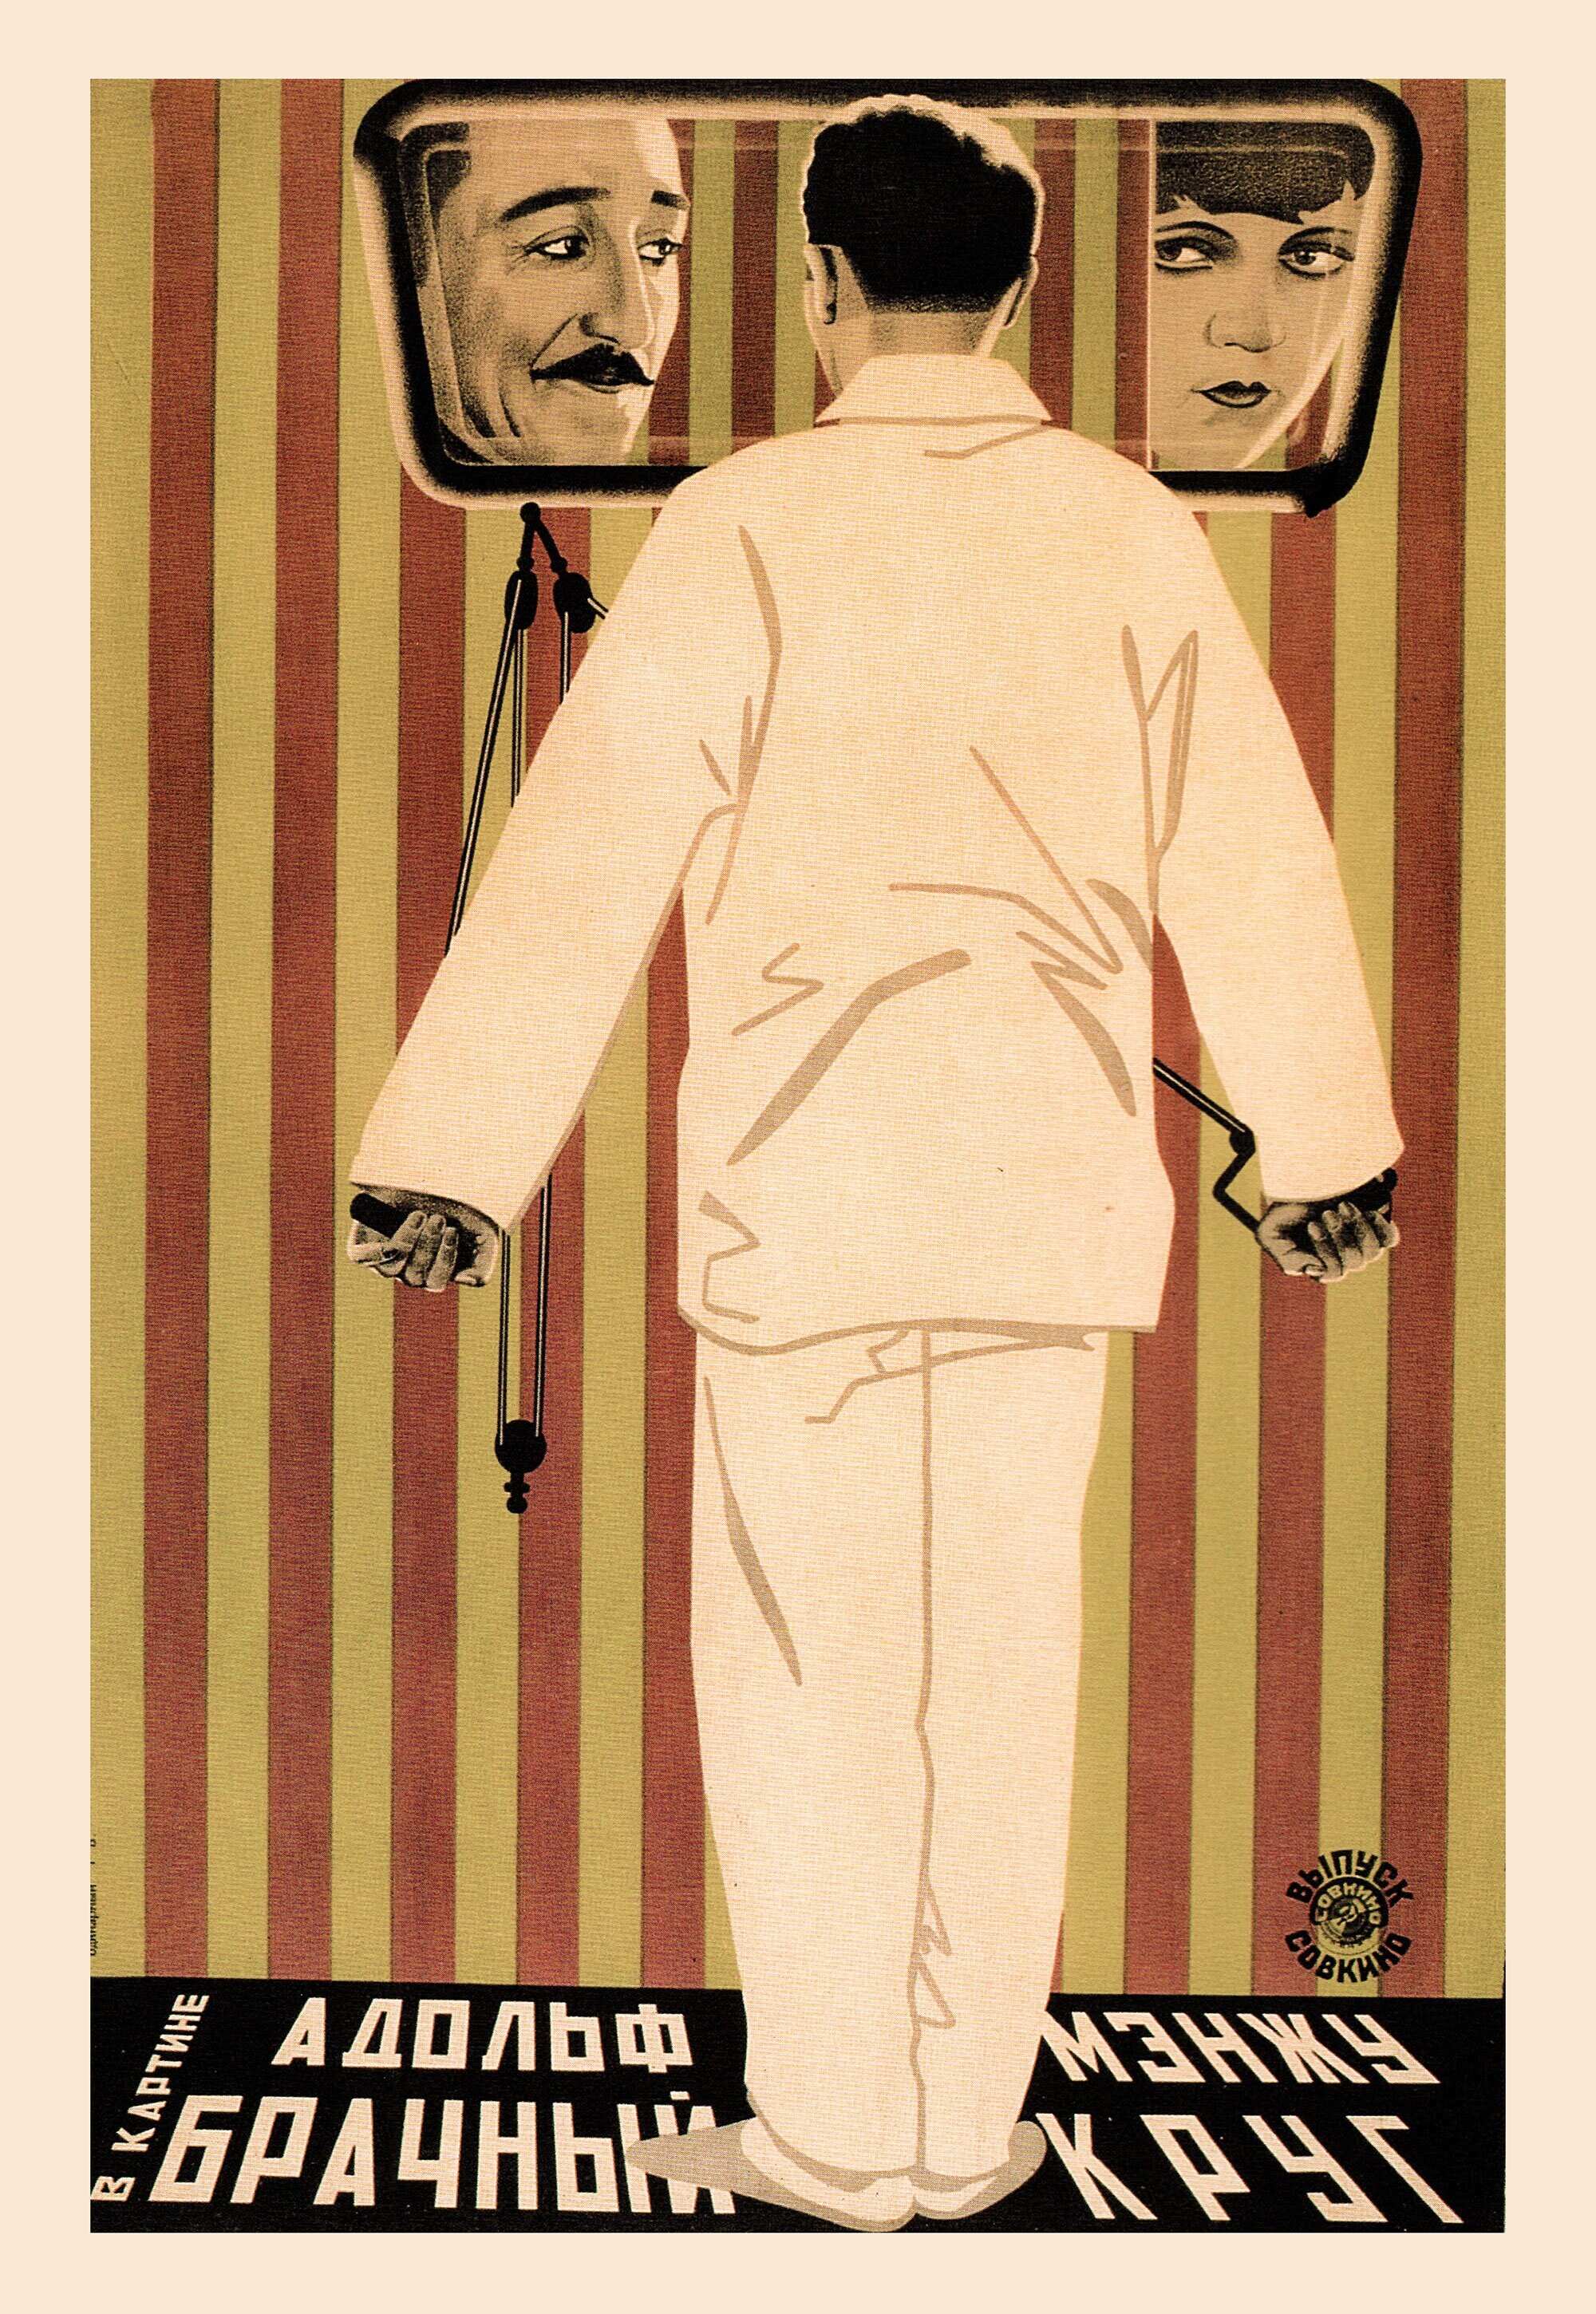 Брачный круг, 1924 год,  режиссёр Эрнст Любич, плакат к фильму, авторы Владимир и Георгий Стенберги (авангардное советское искусство, 1920-е)